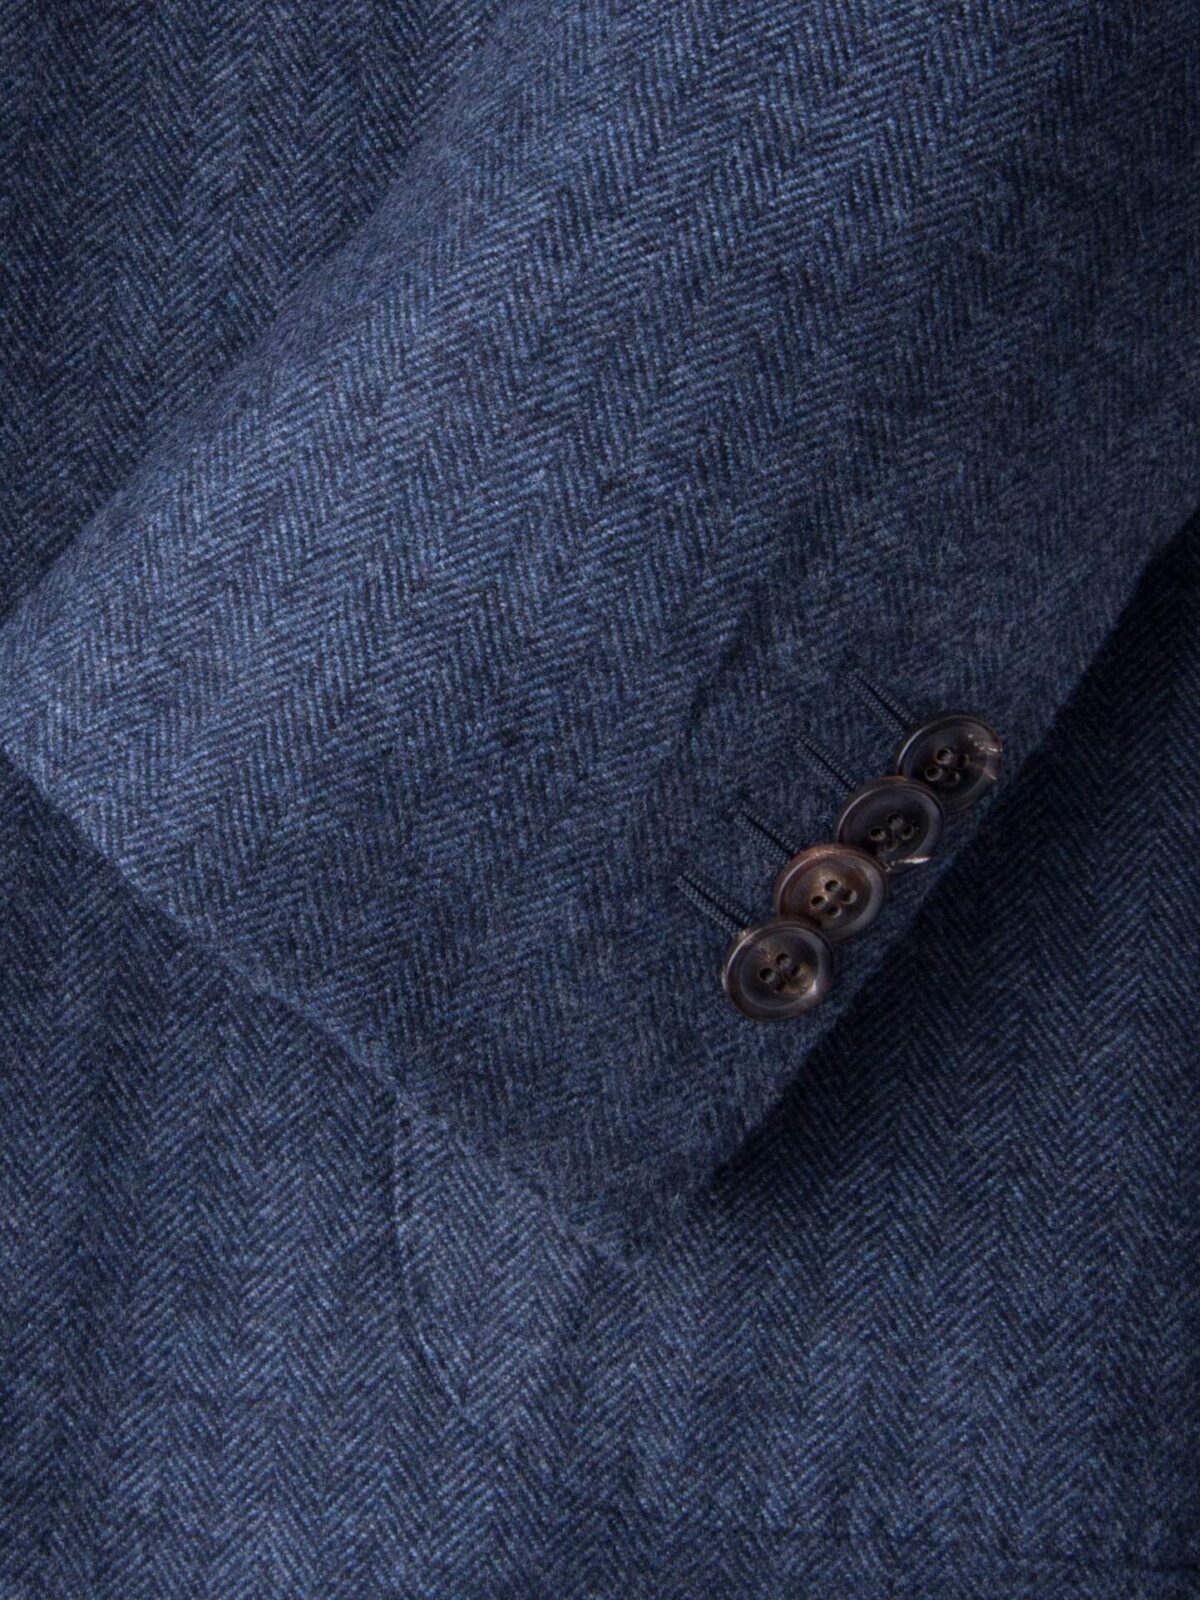 Slate Wool Cashmere Herringbone Hudson Jacket